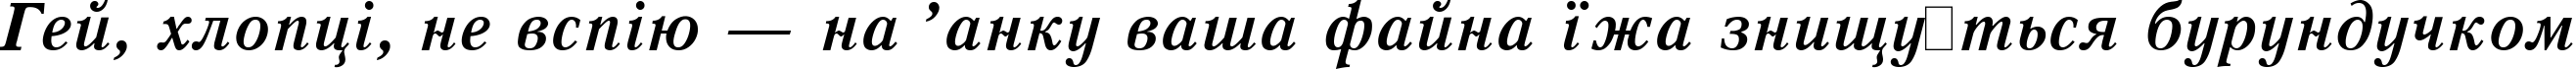 Пример написания шрифтом Quant Antiqua Bold Italic:001.001 текста на украинском